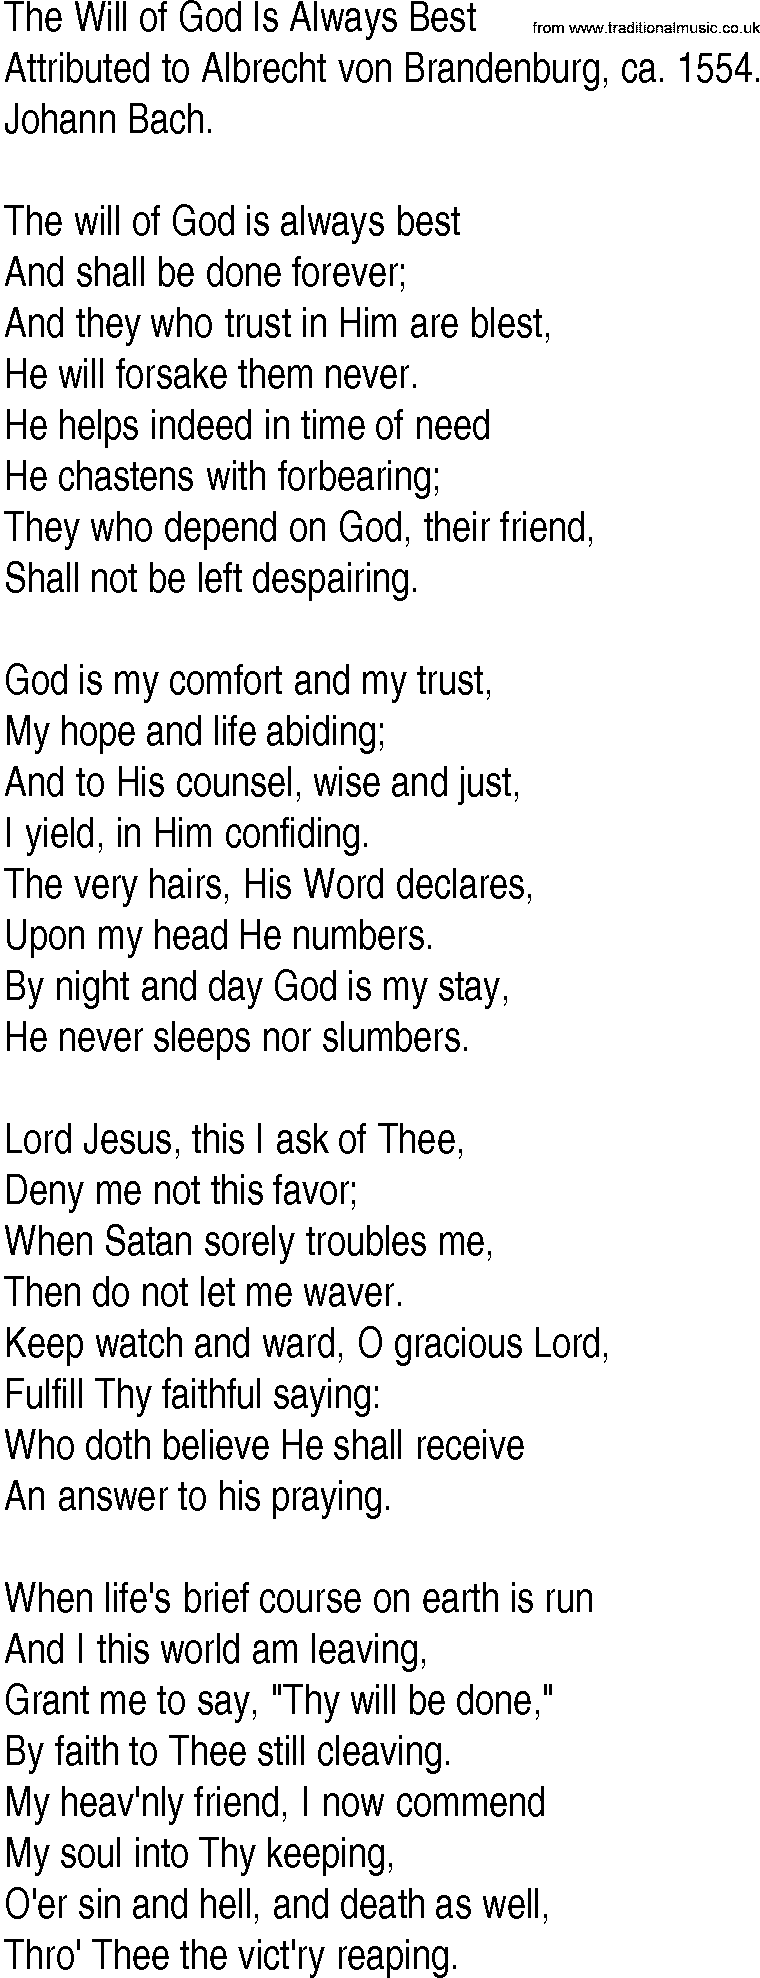 Hymn and Gospel Song: The Will of God Is Always Best by Attributed to Albrecht von Brandenburg ca lyrics